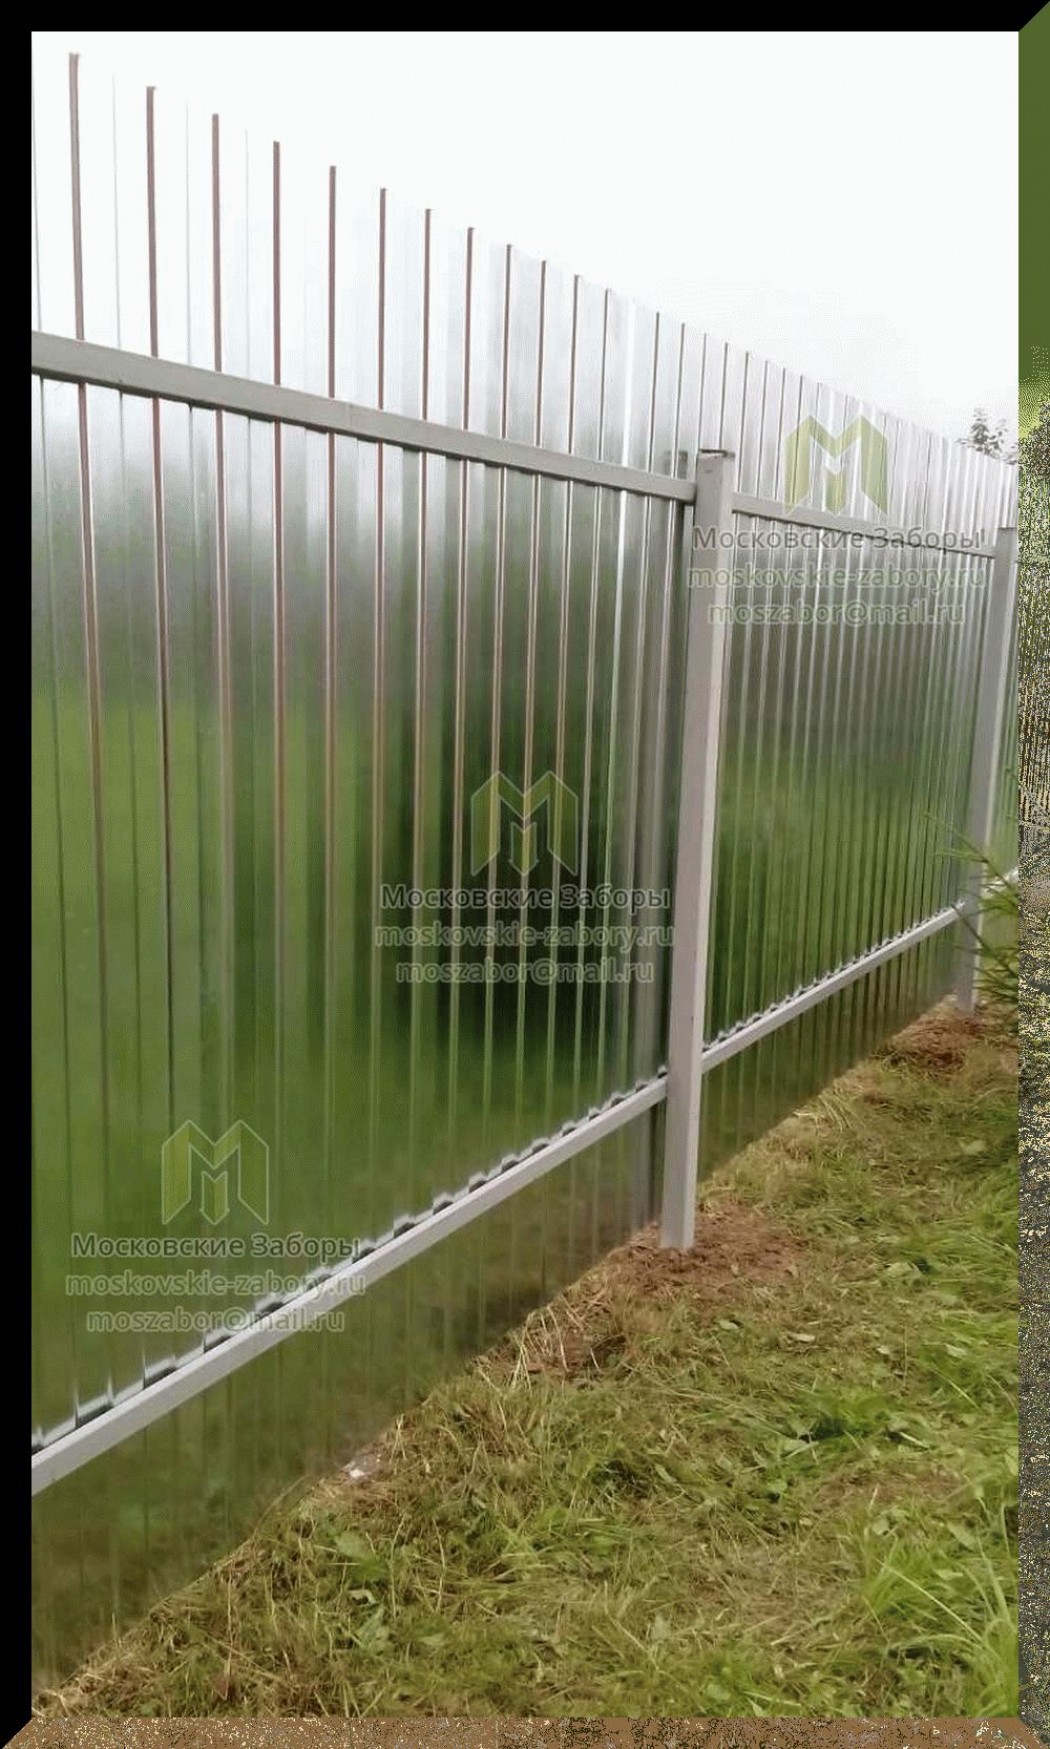 Пластиковые заборы из ПВХ: штакетники и садовые сетки на даче